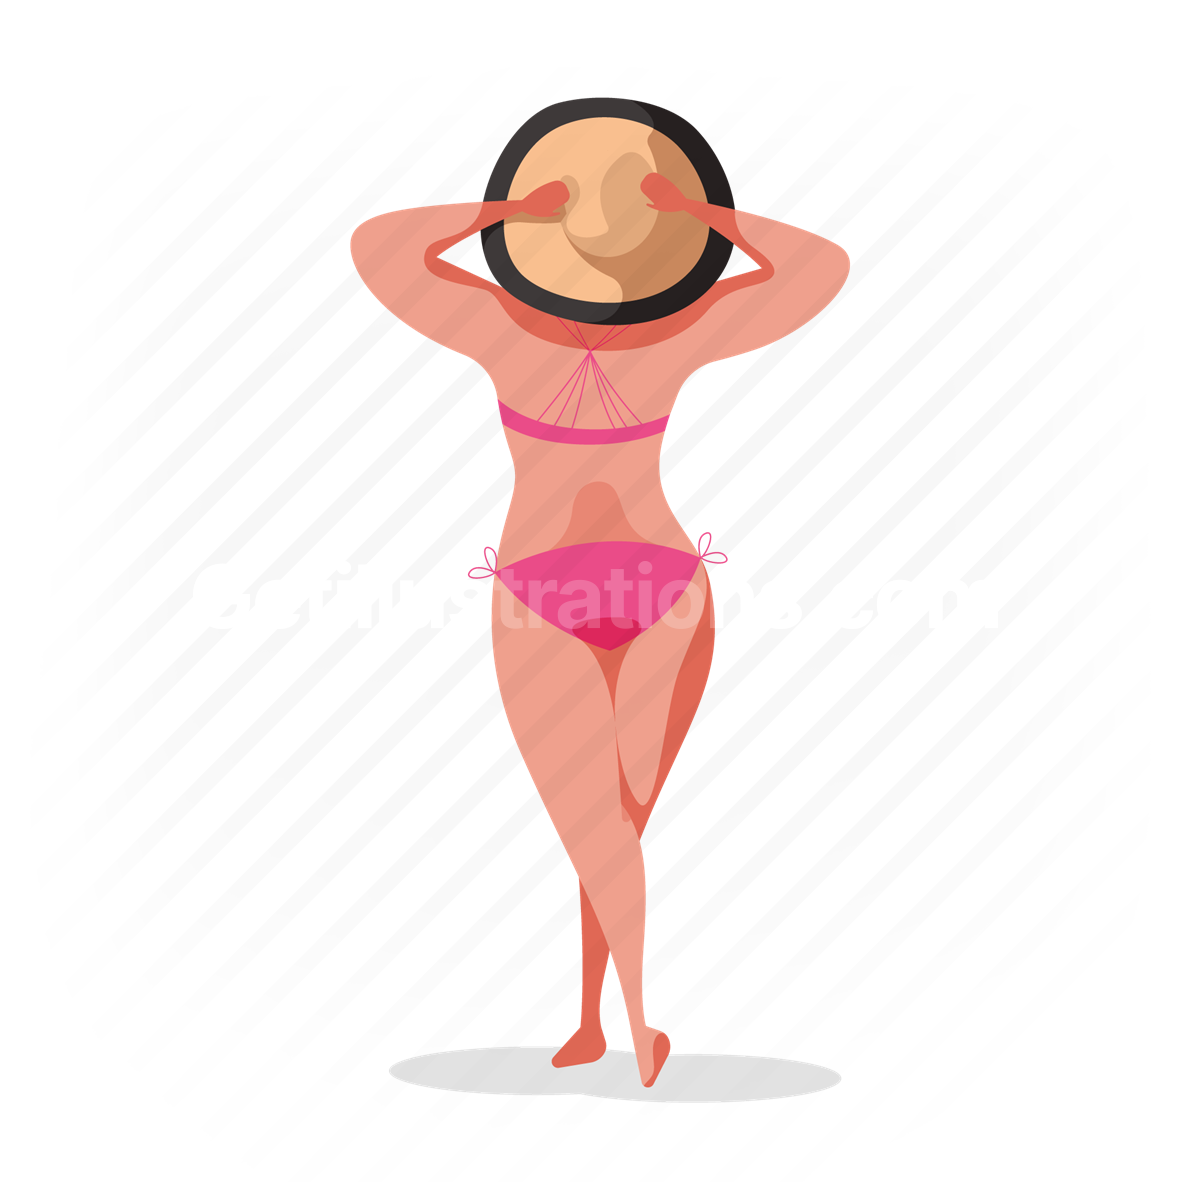 hat, summer, bikini, woman